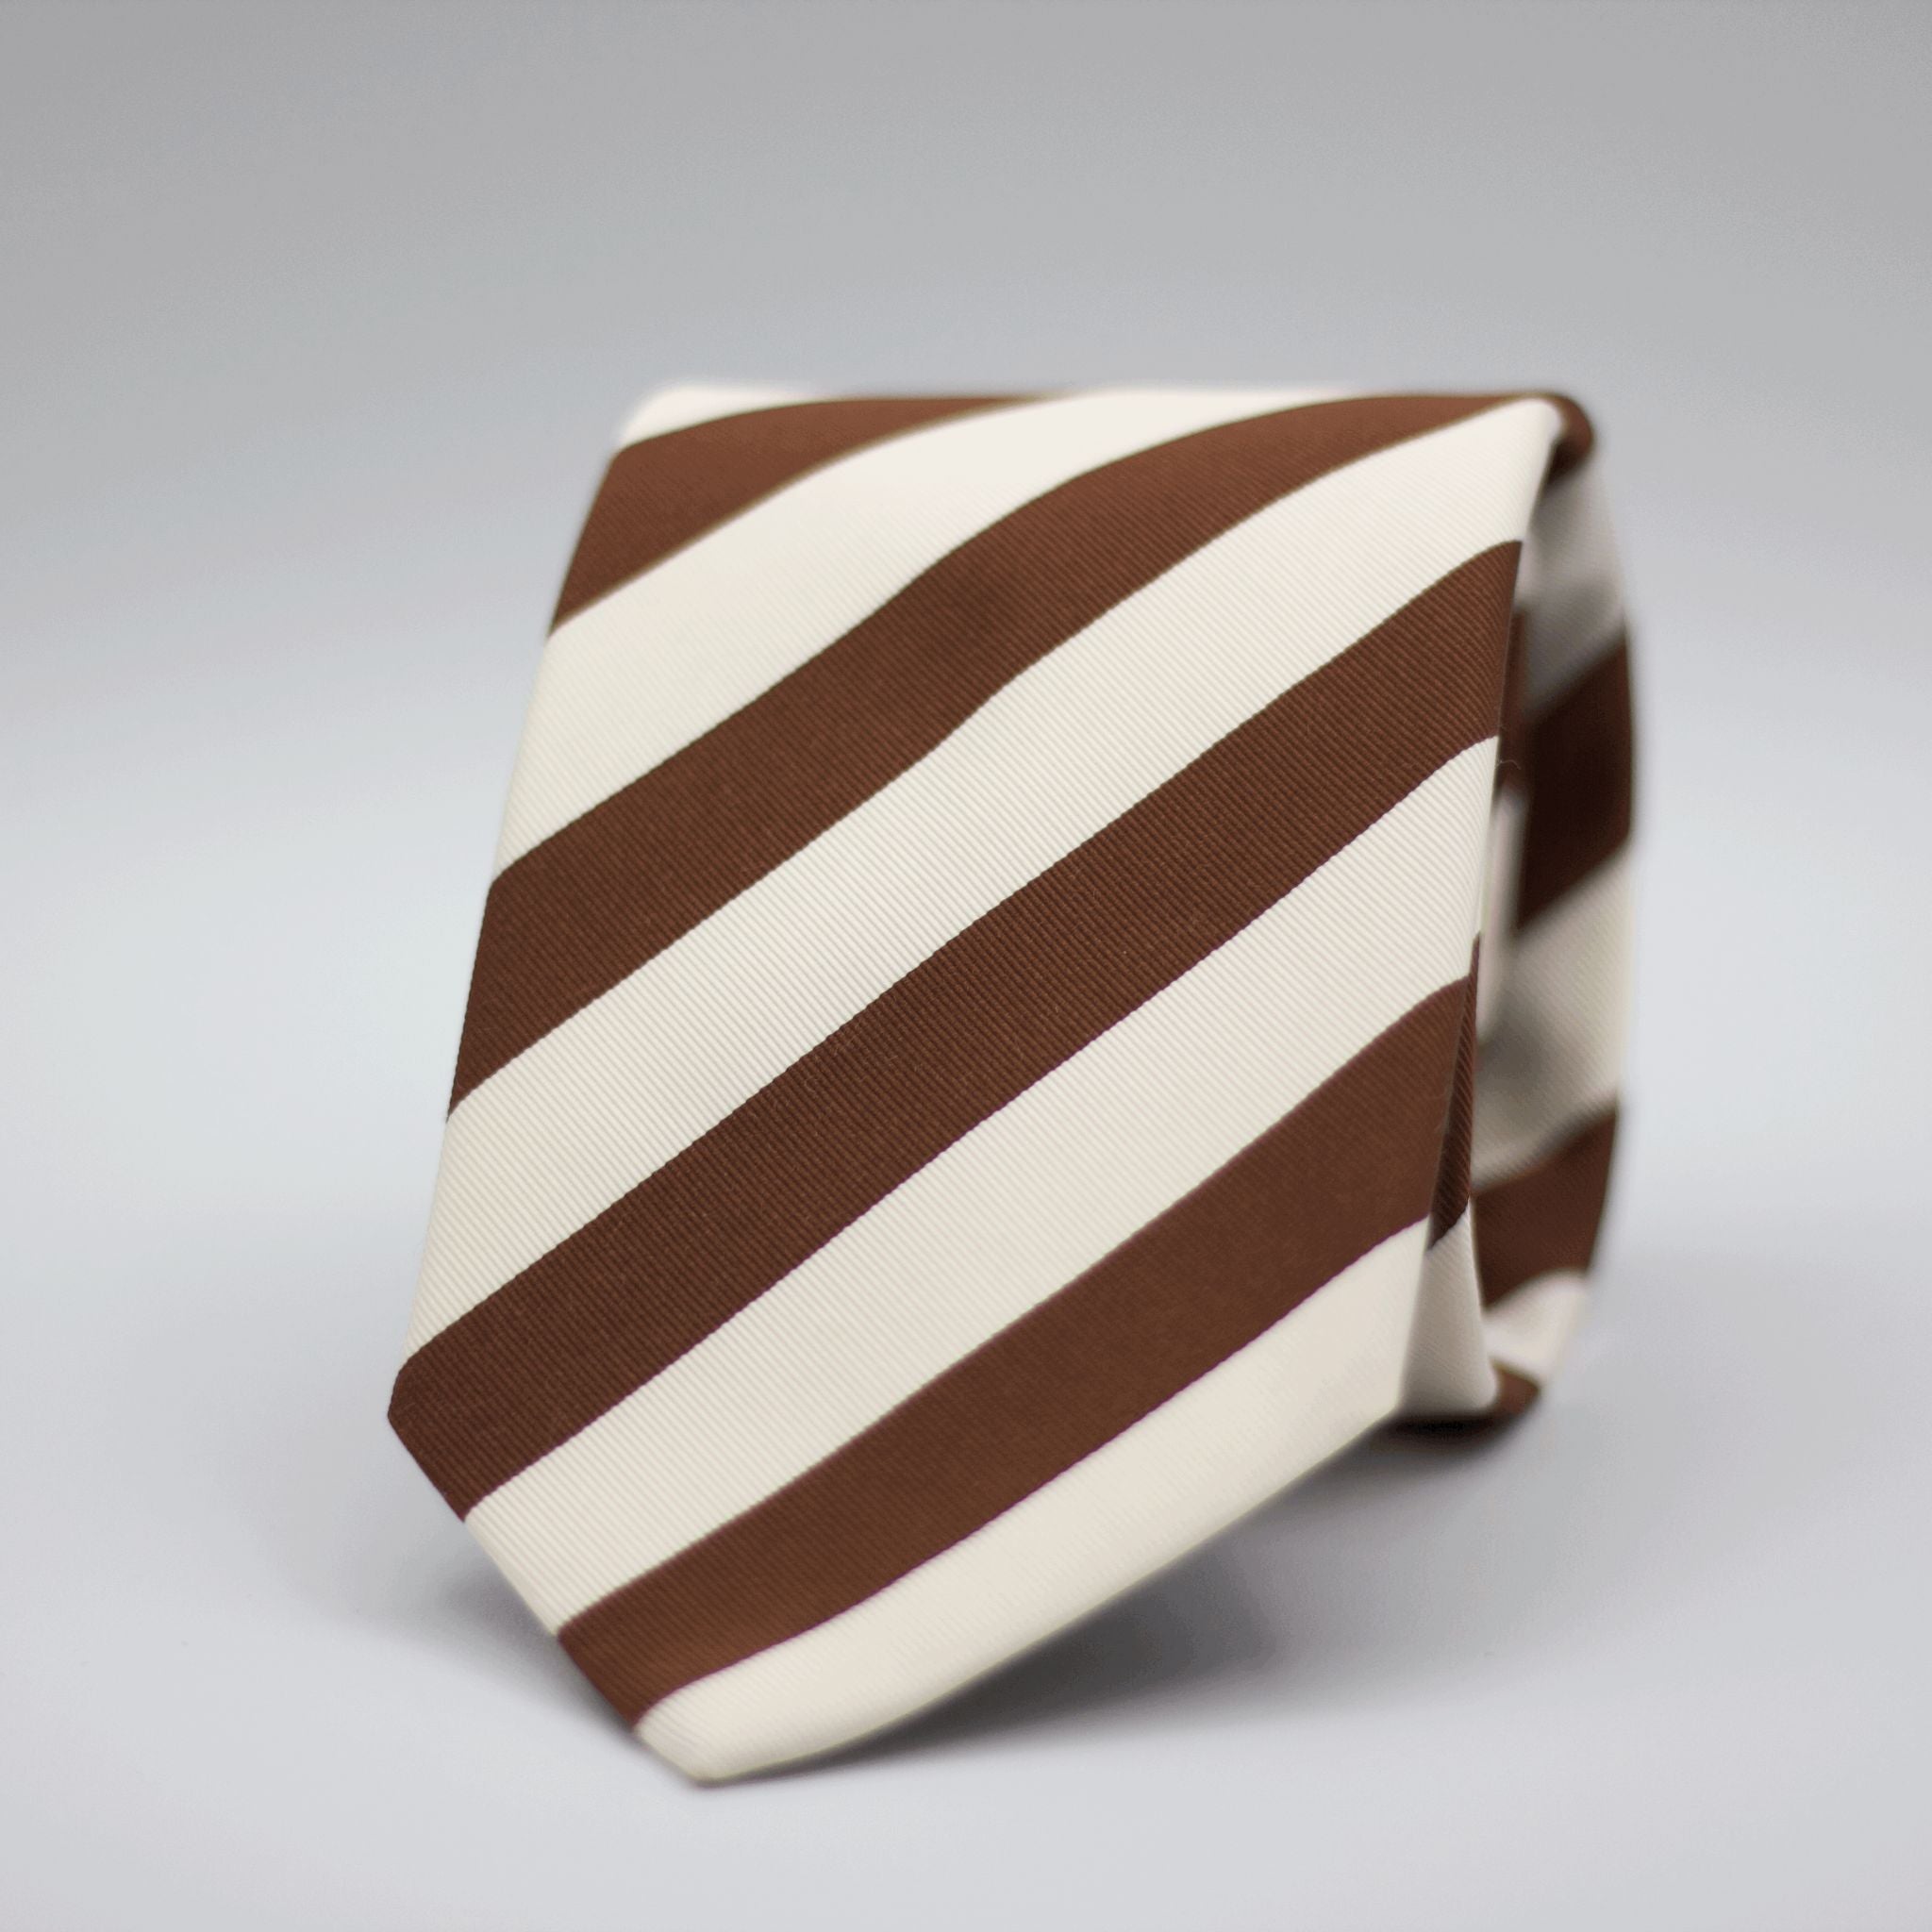 N.O.S. Cruciani & Bella - Repp Woven Silk  - White and Brown striped Tie 